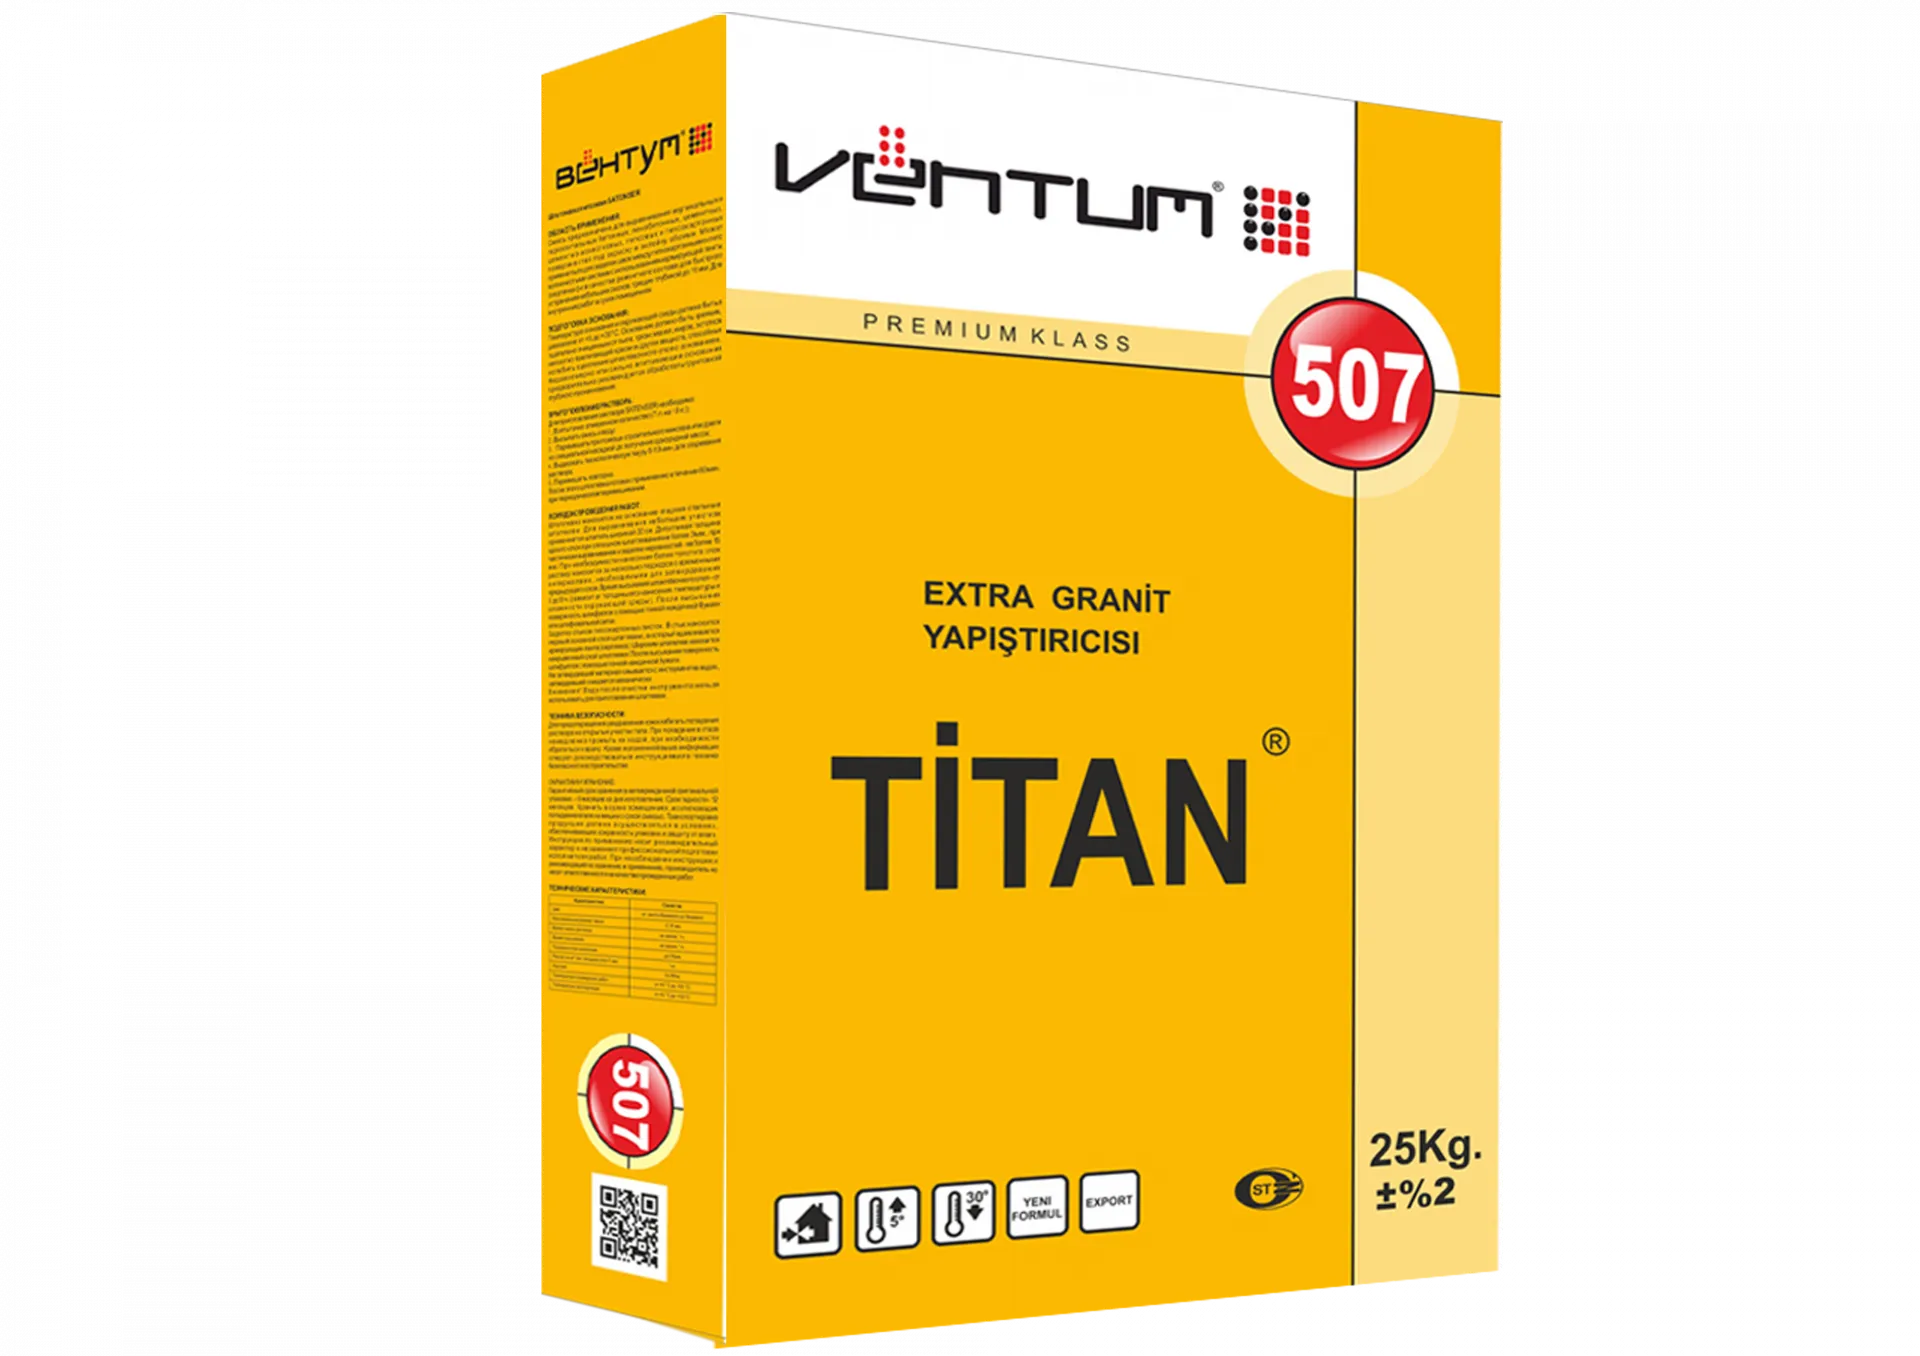 Granit TITAN uchun Ventum sovuqqa chidamli yopishtiruvchi - 507 25kg#1